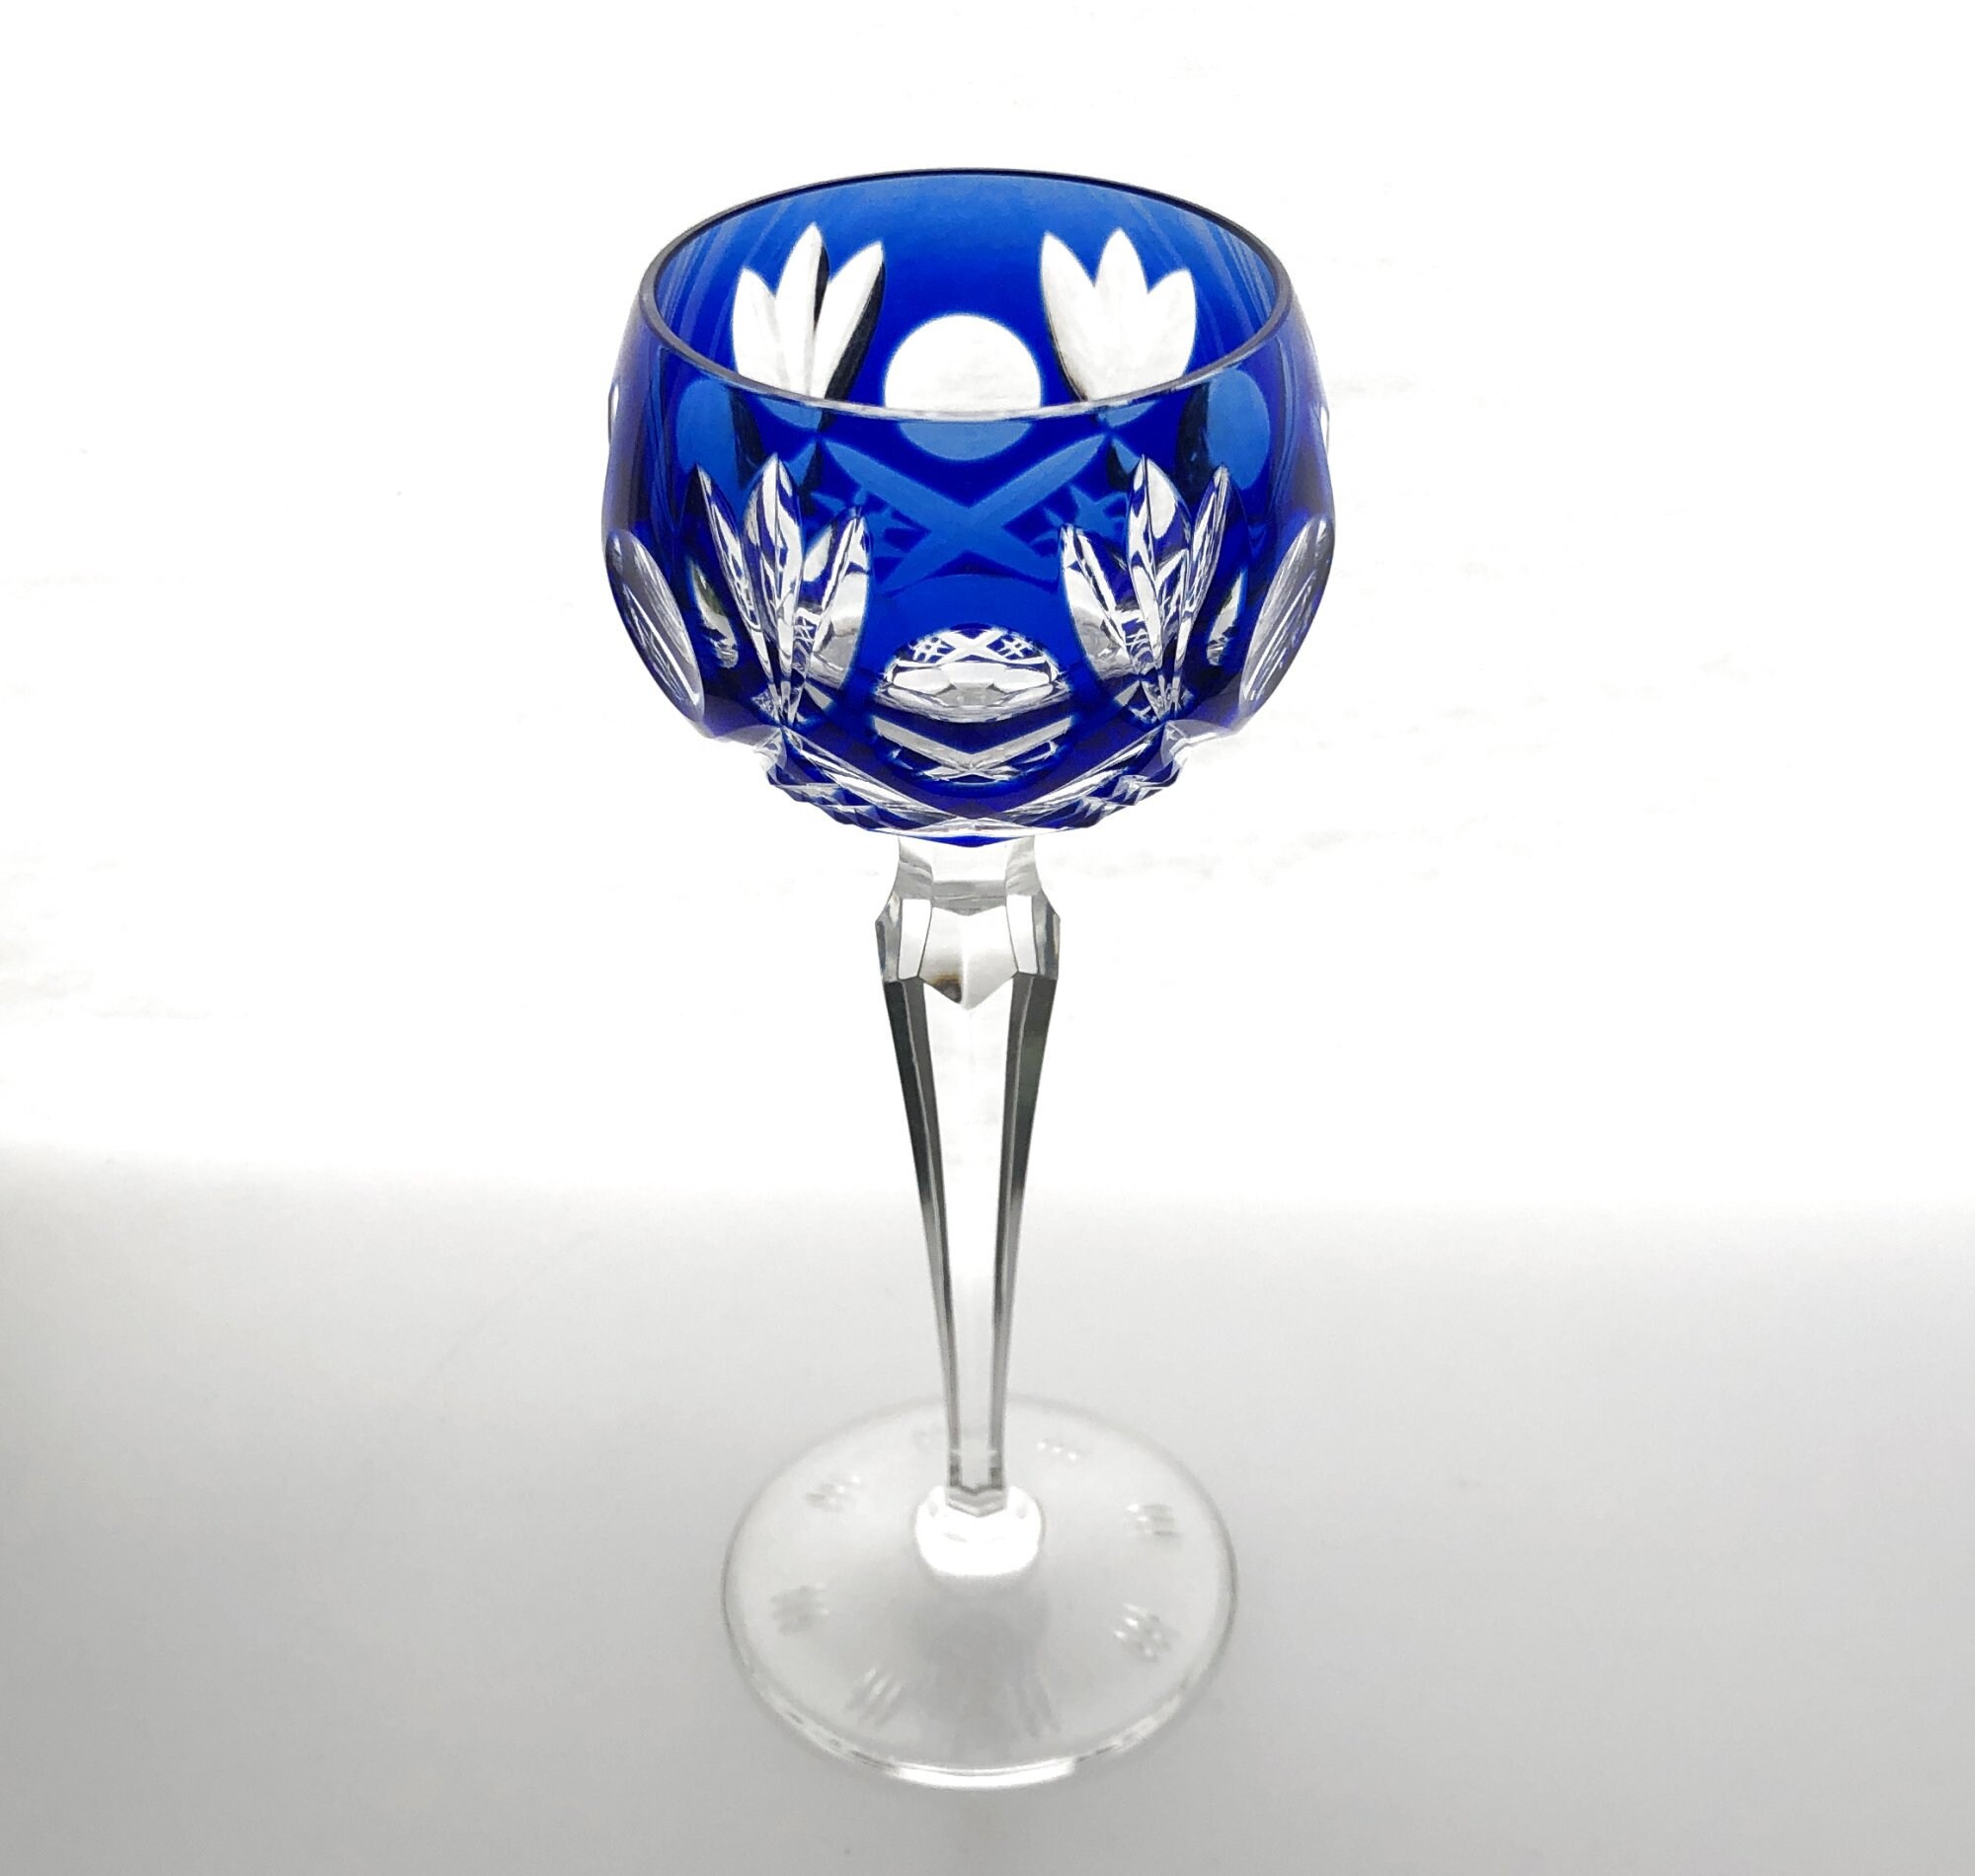 Vintage Cobalt Blue Crystal Wine Glasses - Set of 4 – The New York